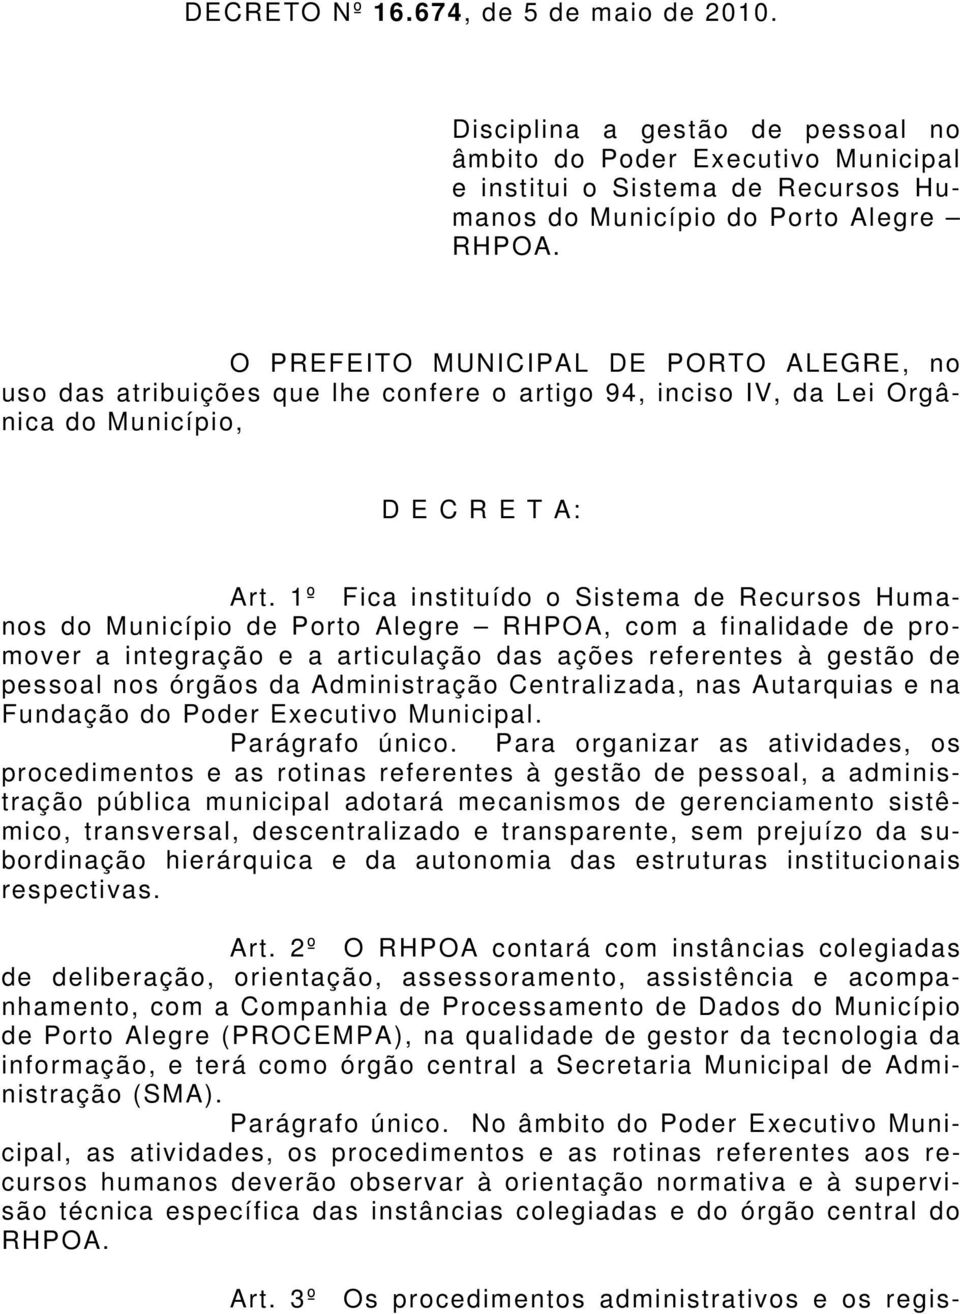 1º Fica instituído o Sistema de Recursos Humanos do Município de Porto Alegre RHPOA, com a finalidade de promover a integração e a articulação das ações referentes à gestão de pessoal nos órgãos da